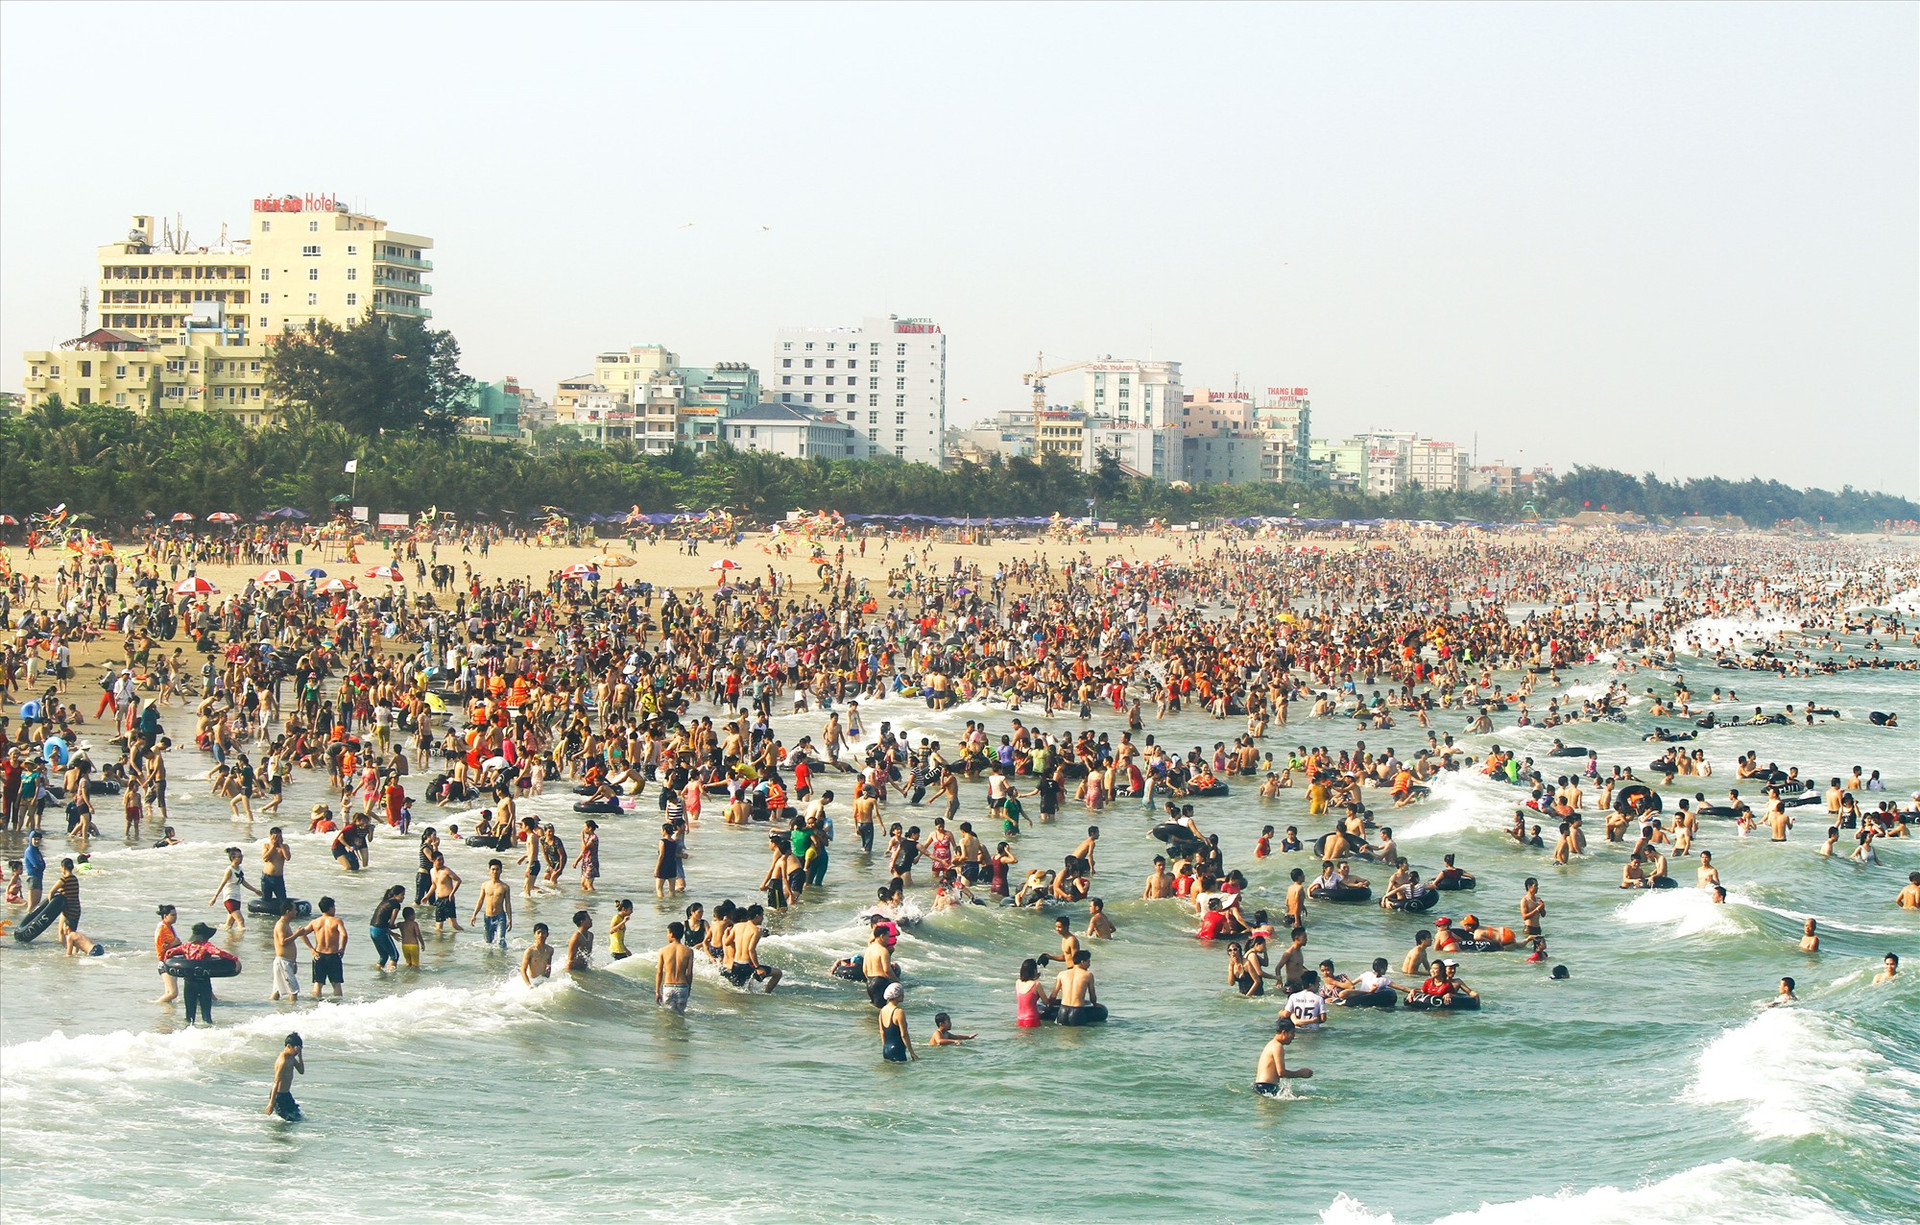 Bãi biển Sầm Sơn với triền cát bằng, an toàn cho du khách.